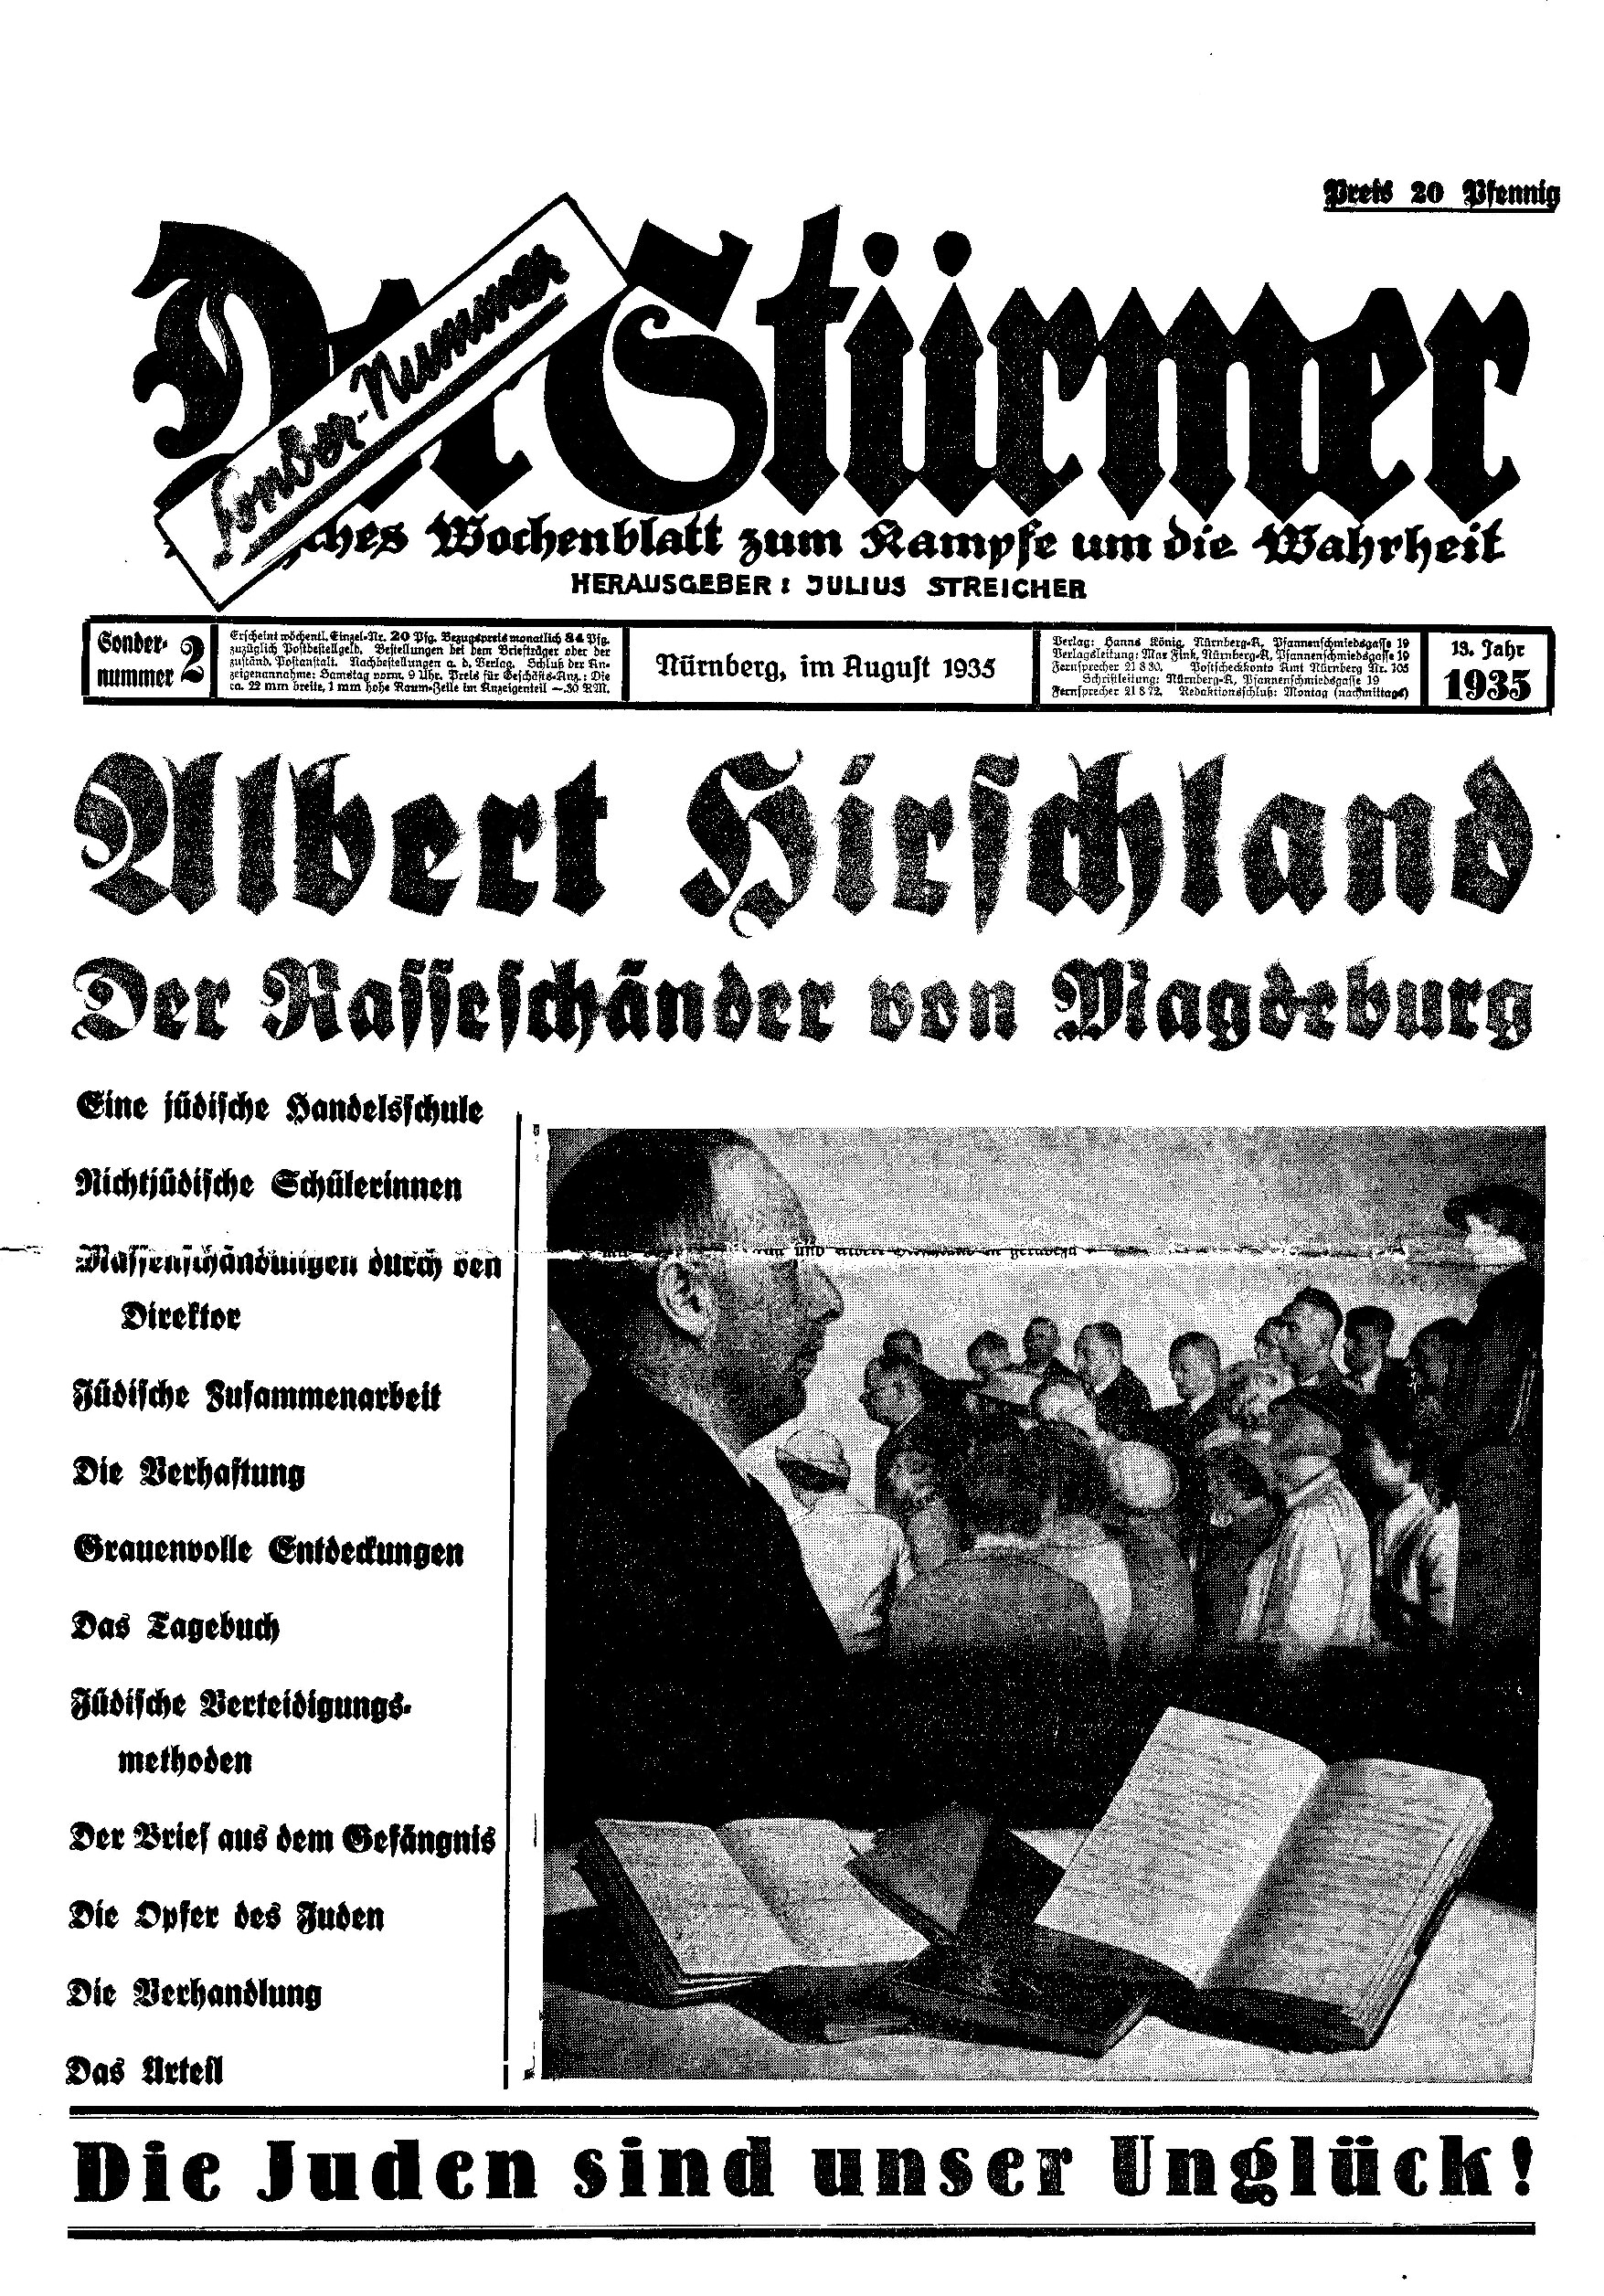 Der Stürmer - 1935 Sondernummer 2 - Albert Hirschland